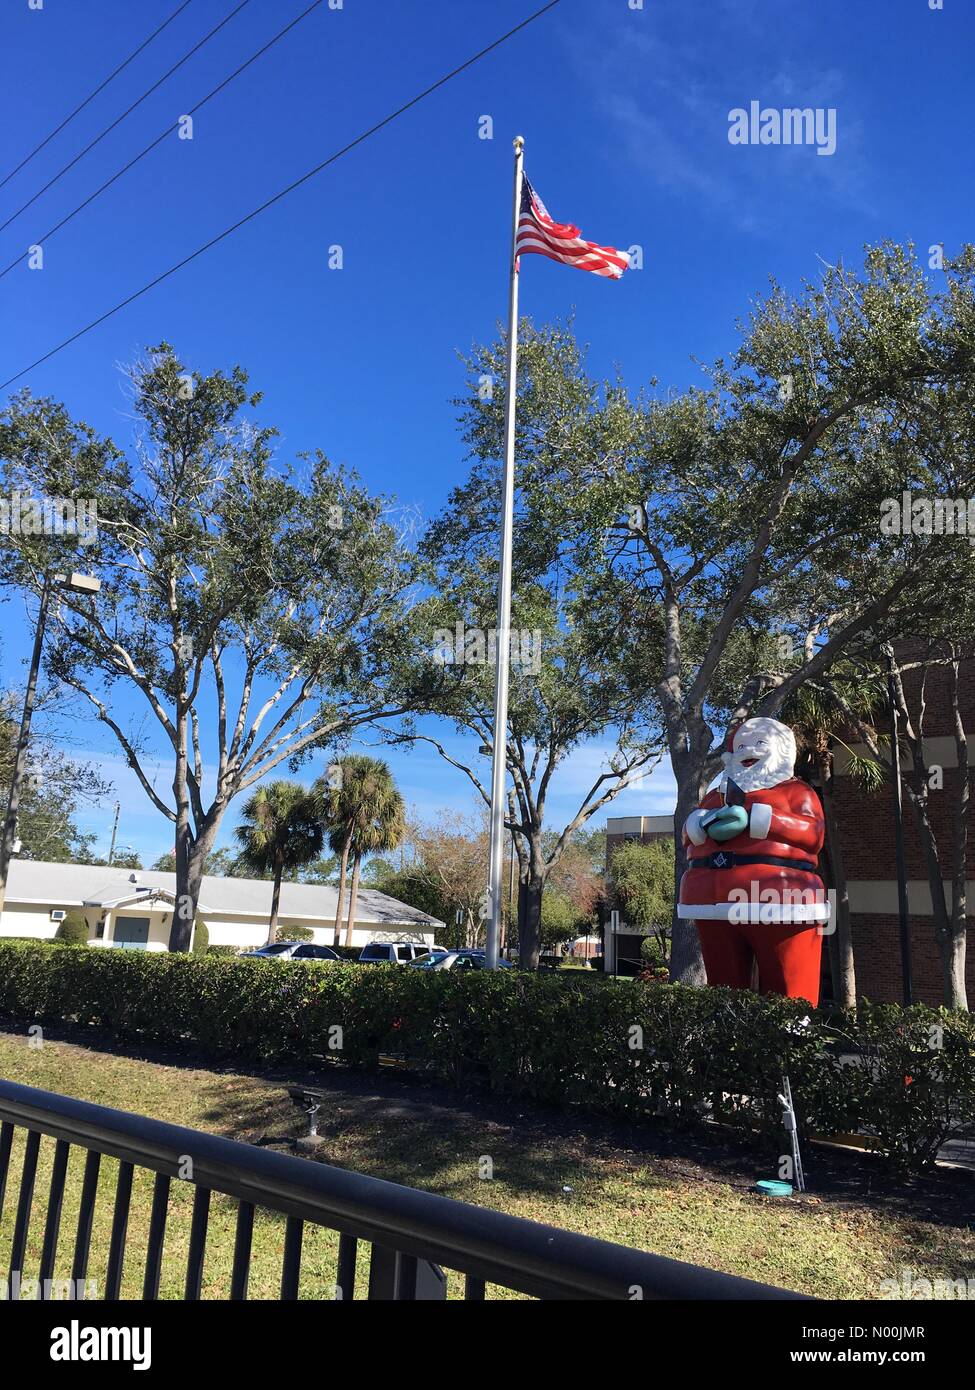 Florisa, USA. 5. Januar, 2018. Weihnachtsmann mit der amerikanischen Flagge im sonnigen Florida Credit: Teresa Williams/StockimoNews/Alamy Live News Credit: Teresa Williams/StockimoNews/Alamy leben Nachrichten Stockfoto